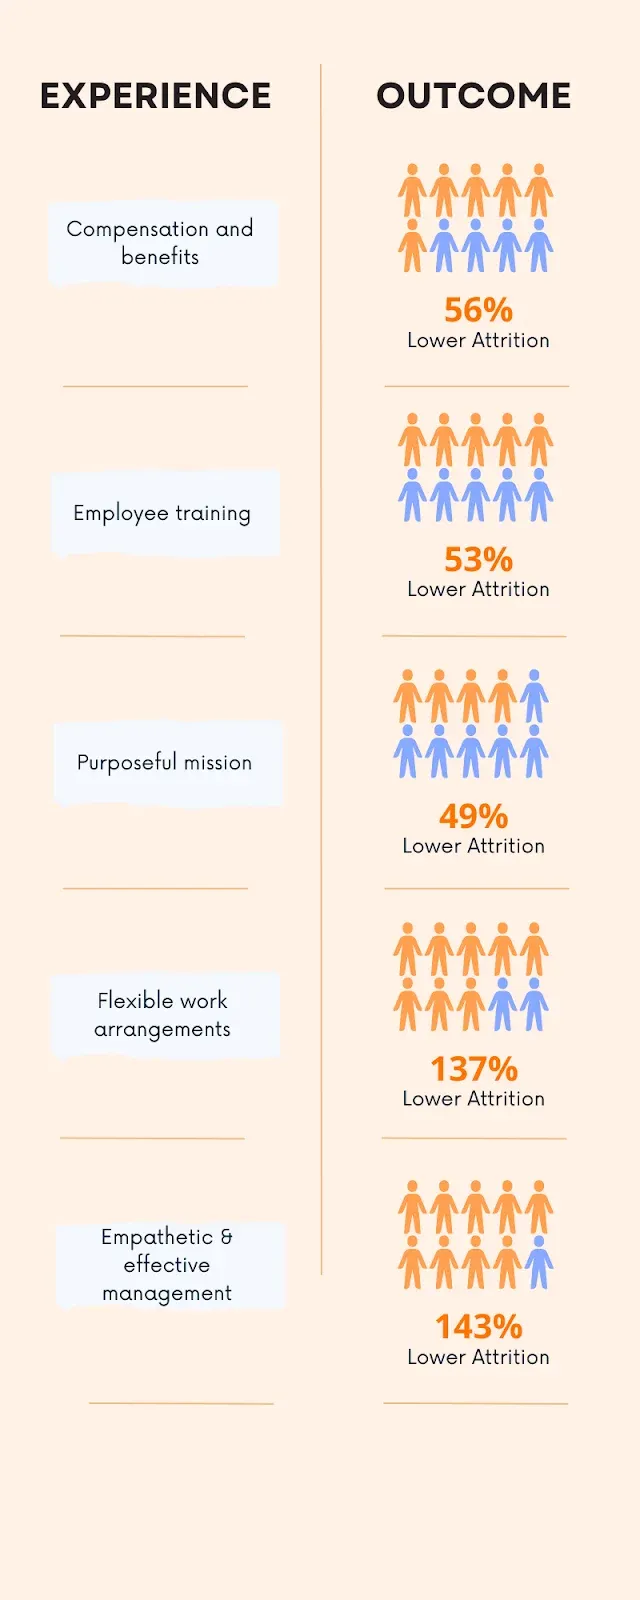 Fuente: LinkedIn, Tendencias mundiales del talento 2020impacto empresarial de las estrategias de buena experiencia